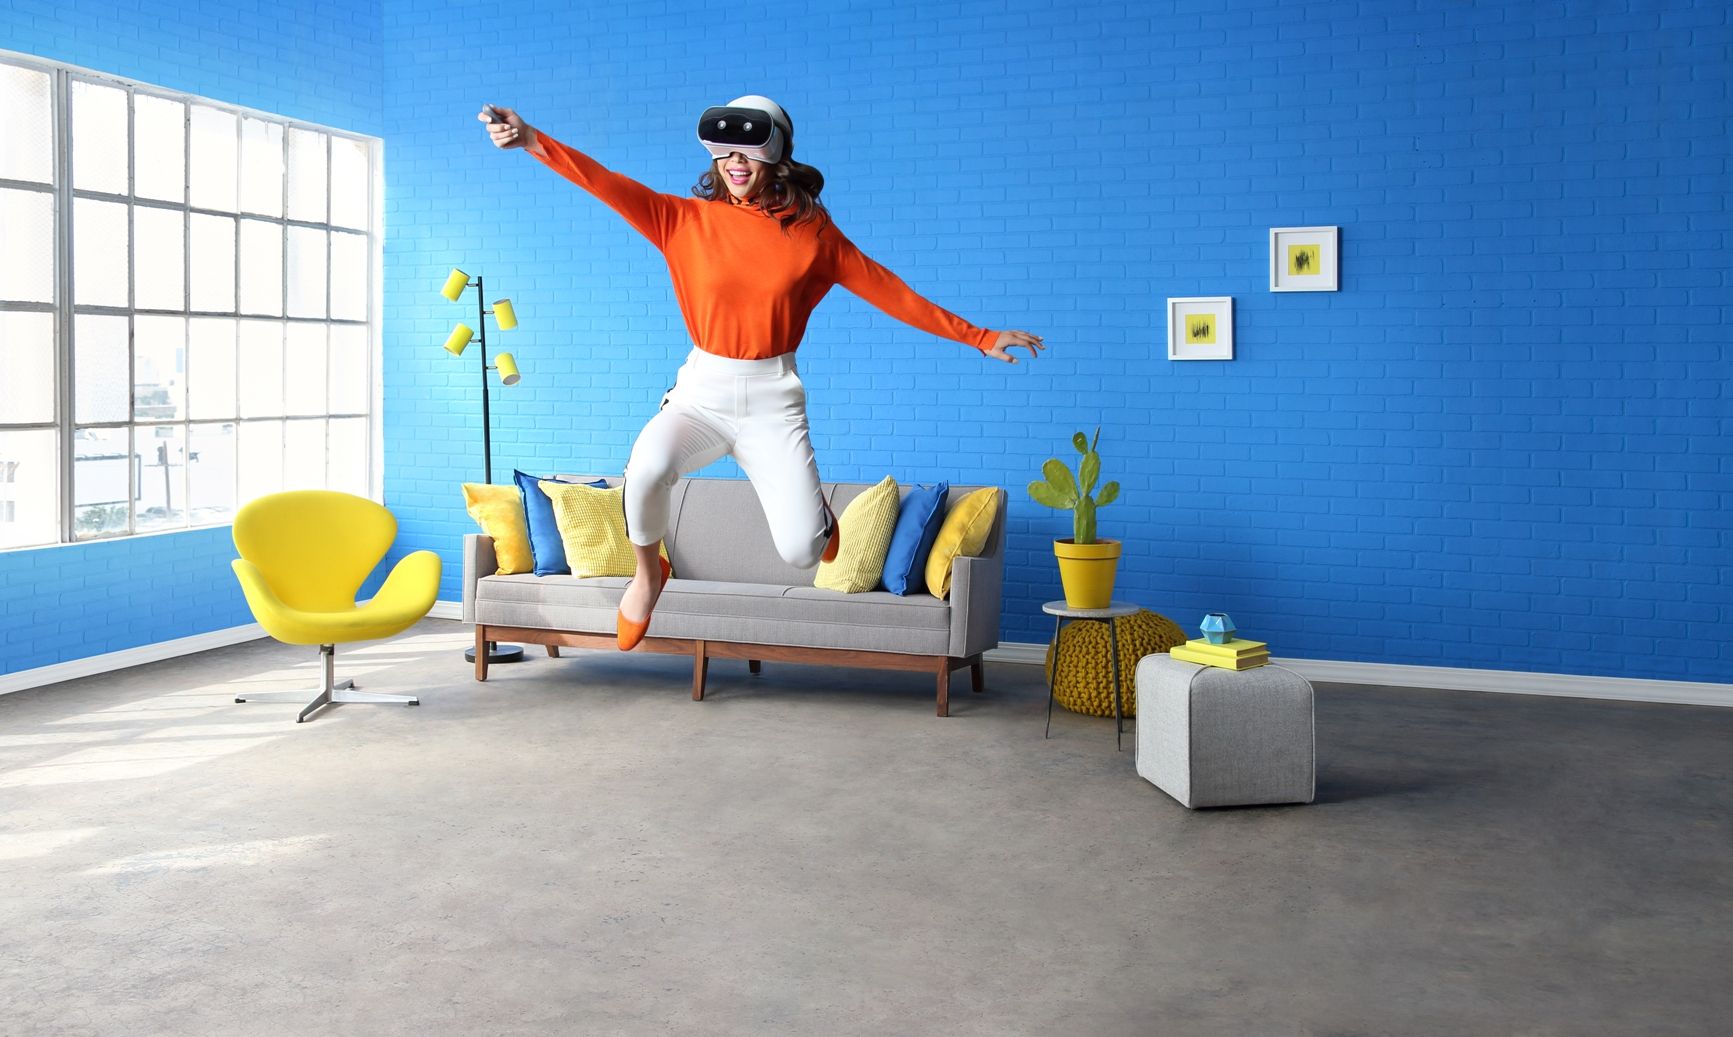 Lenovo จับมือ Google เปิดตัว Mirage Solo อุปกรณ์ Daydream VR แบบไม่ง้อมือถือ